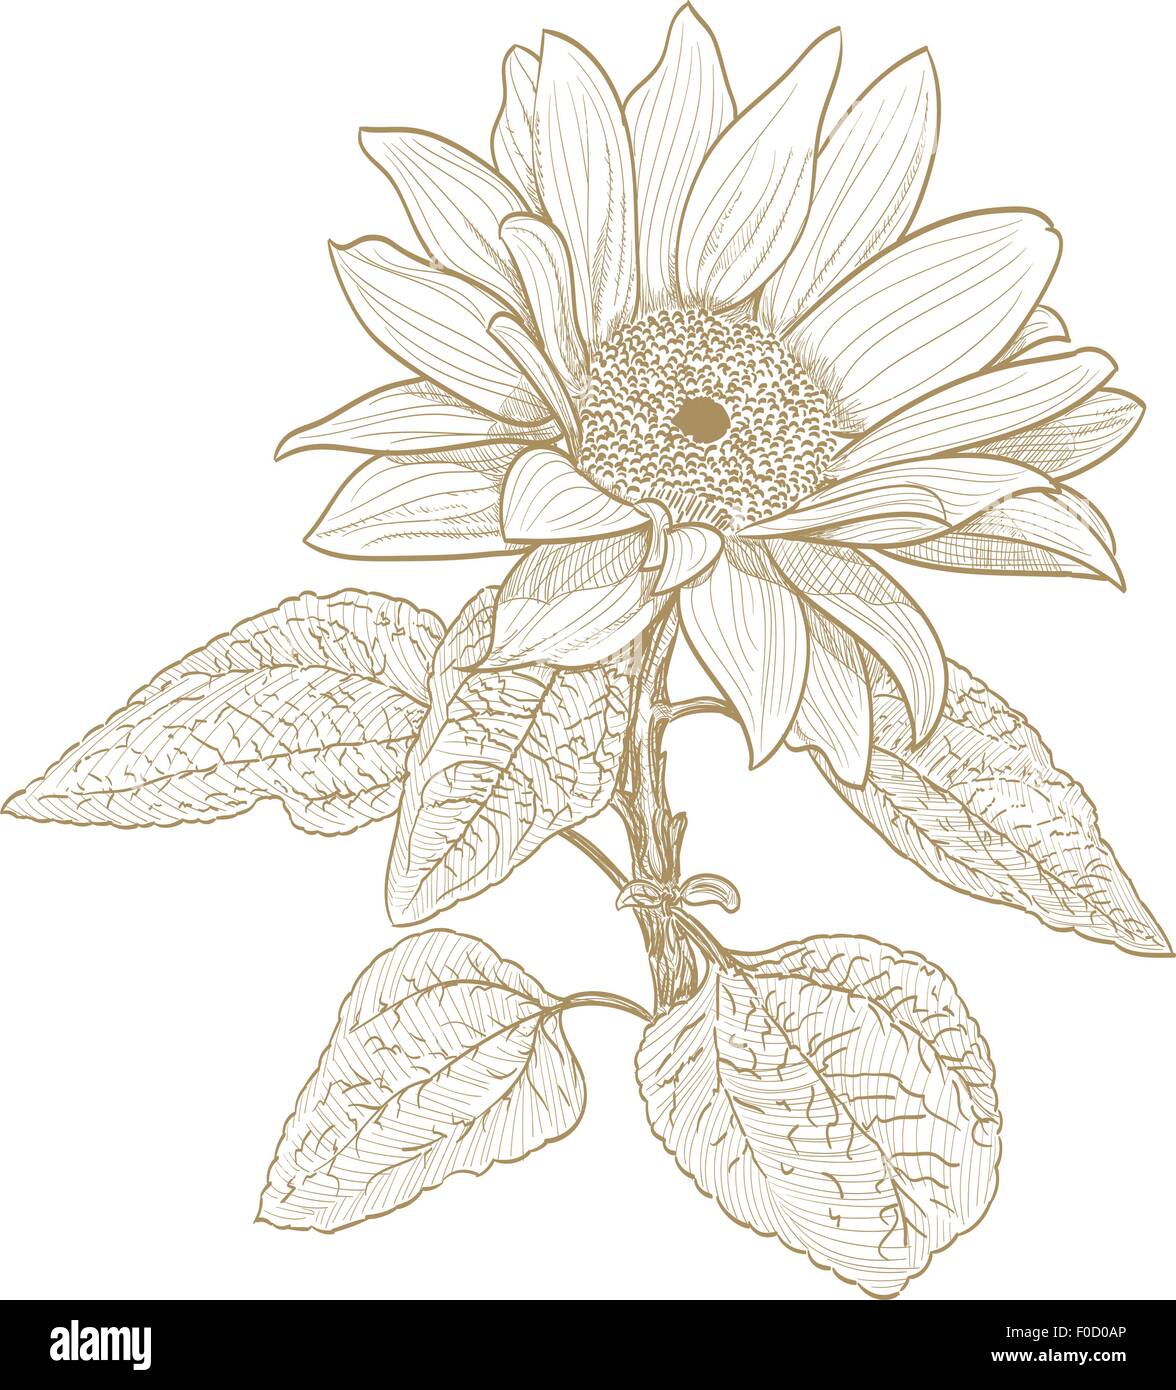 Sonnenblume Monochrome Zeichnung auf weiß Stock Vektor